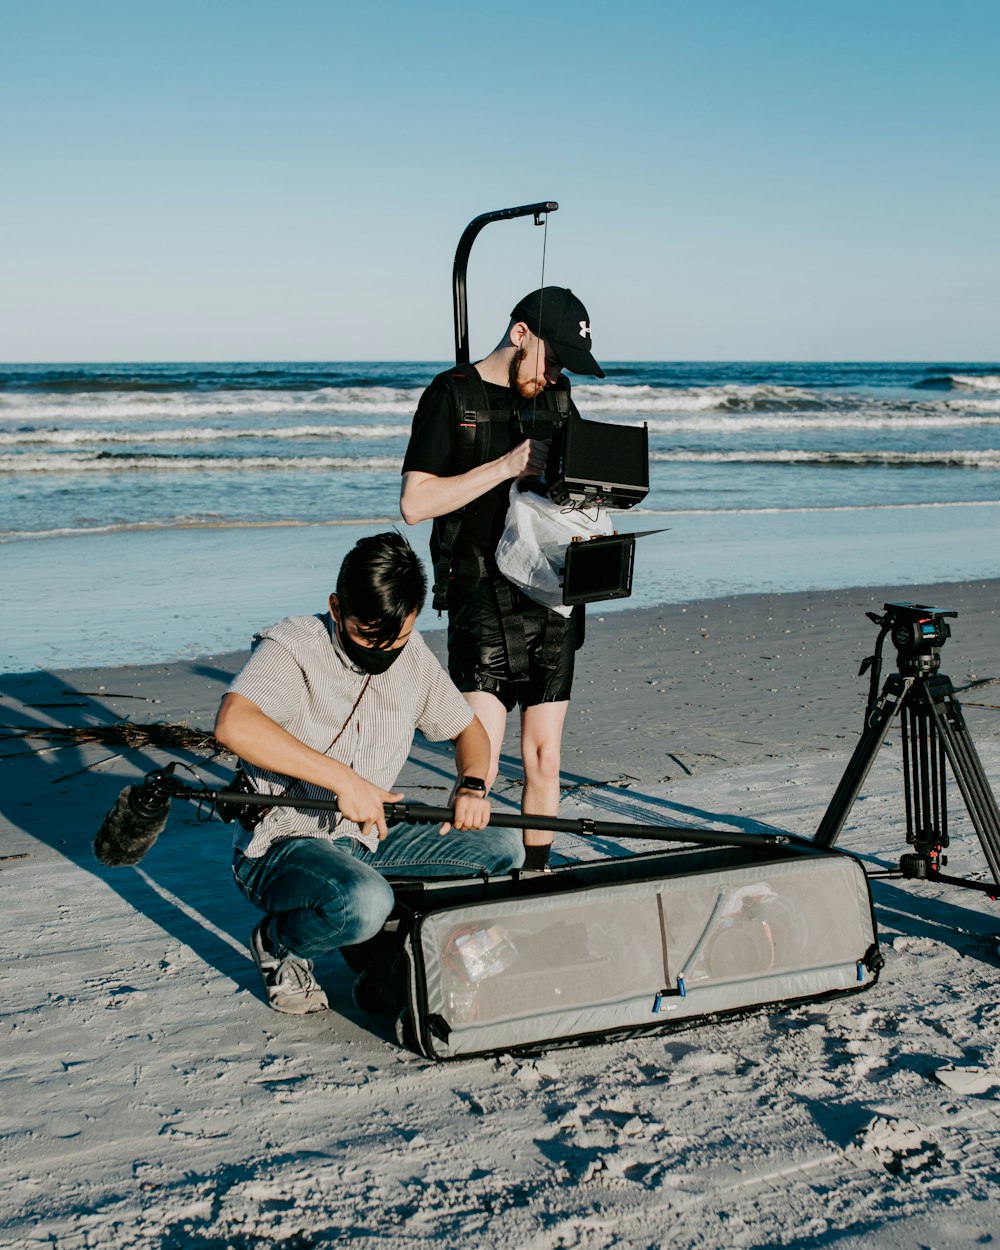 Un hombre está filmando a otro hombre en la playa